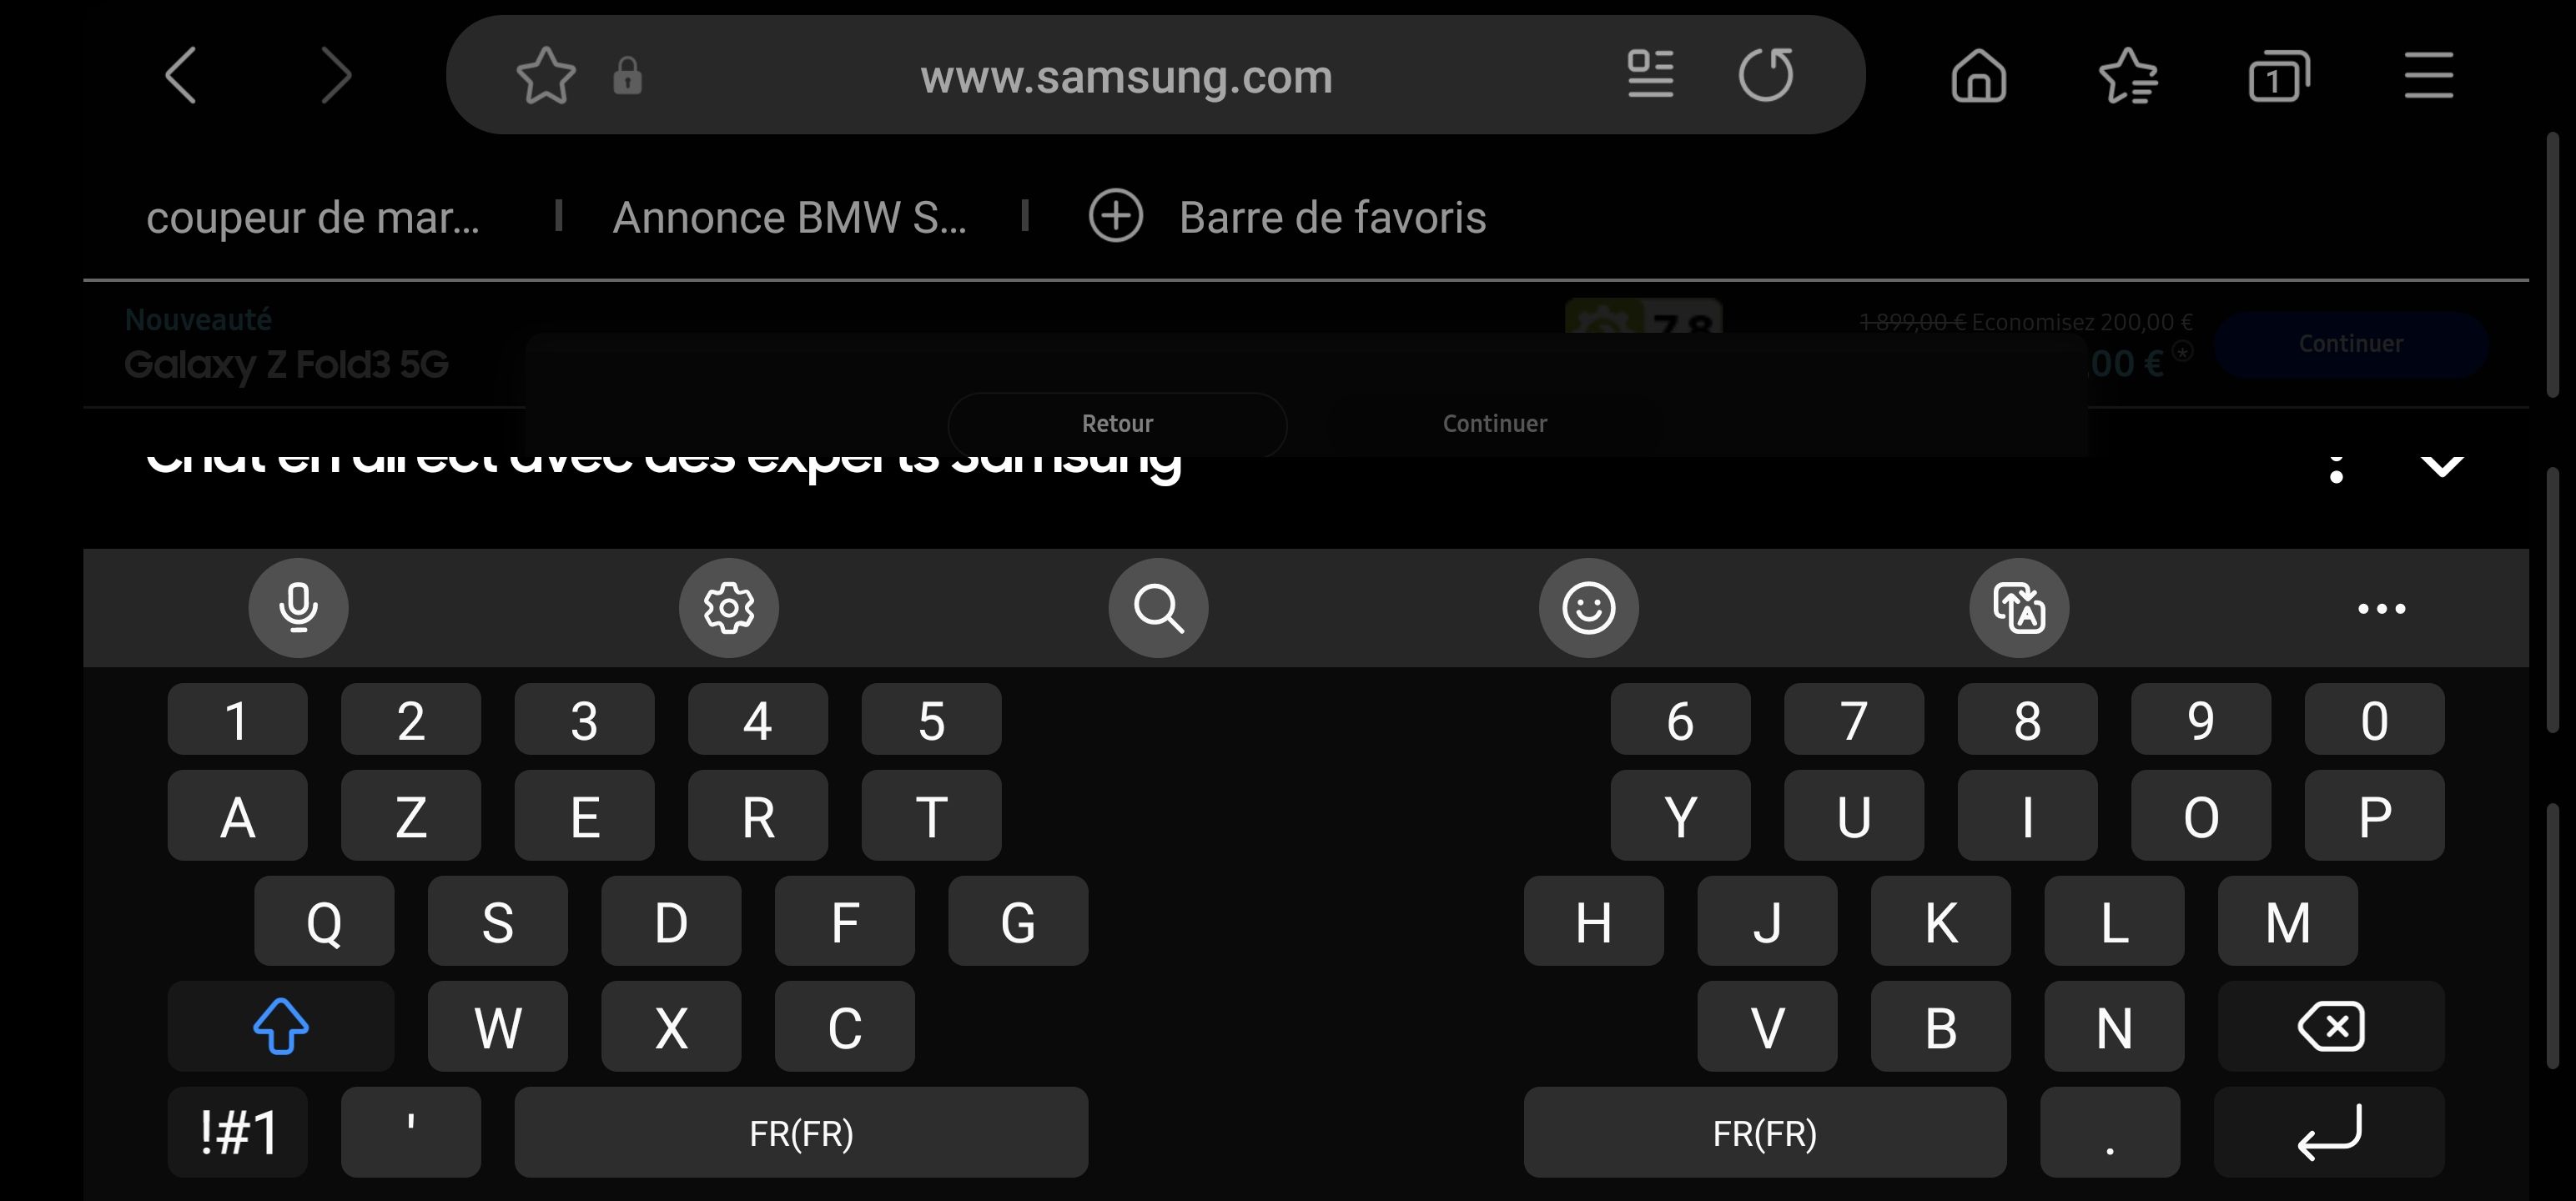 Résolu : Soucis concernant les vidéos et le clavier - Samsung Community